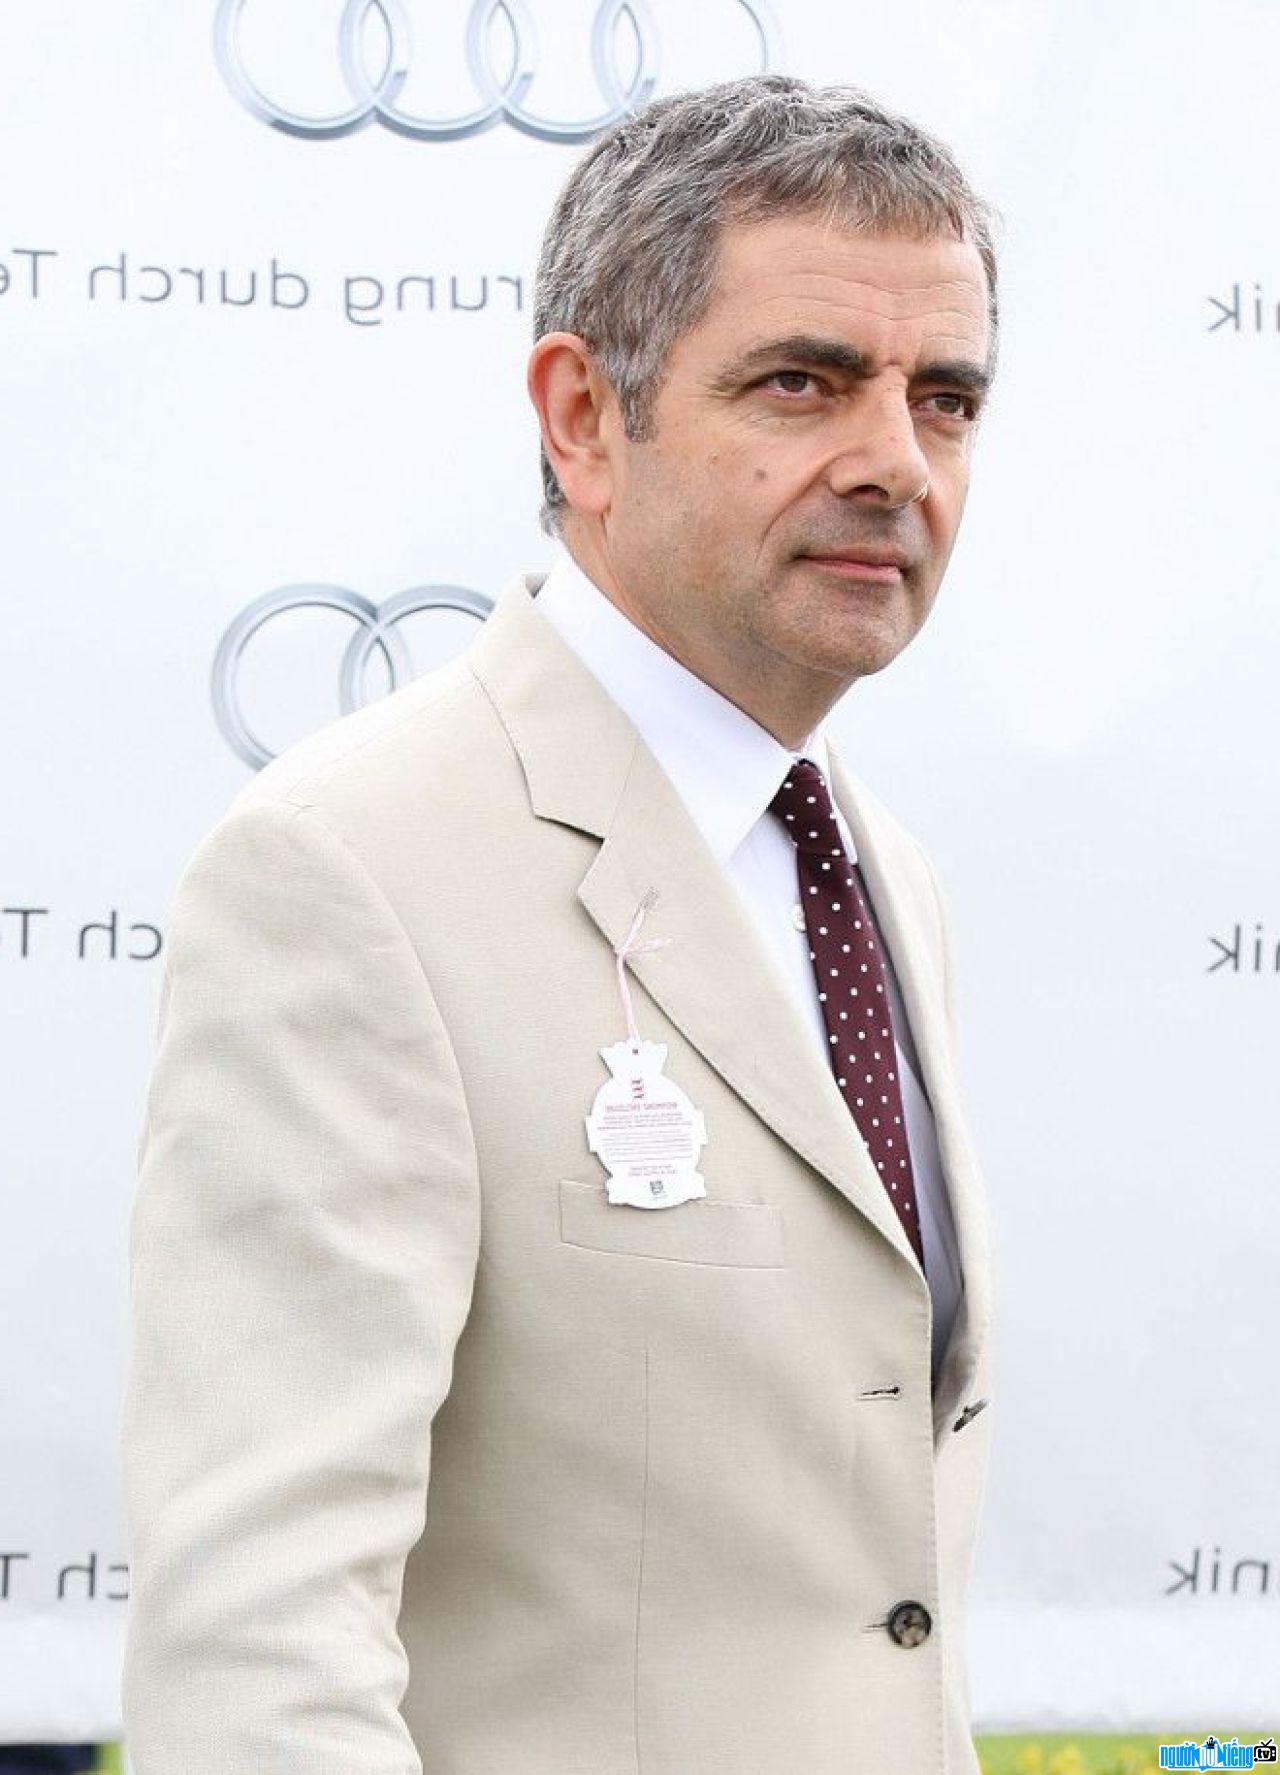 Actor Rowan Atkinson at a recent event